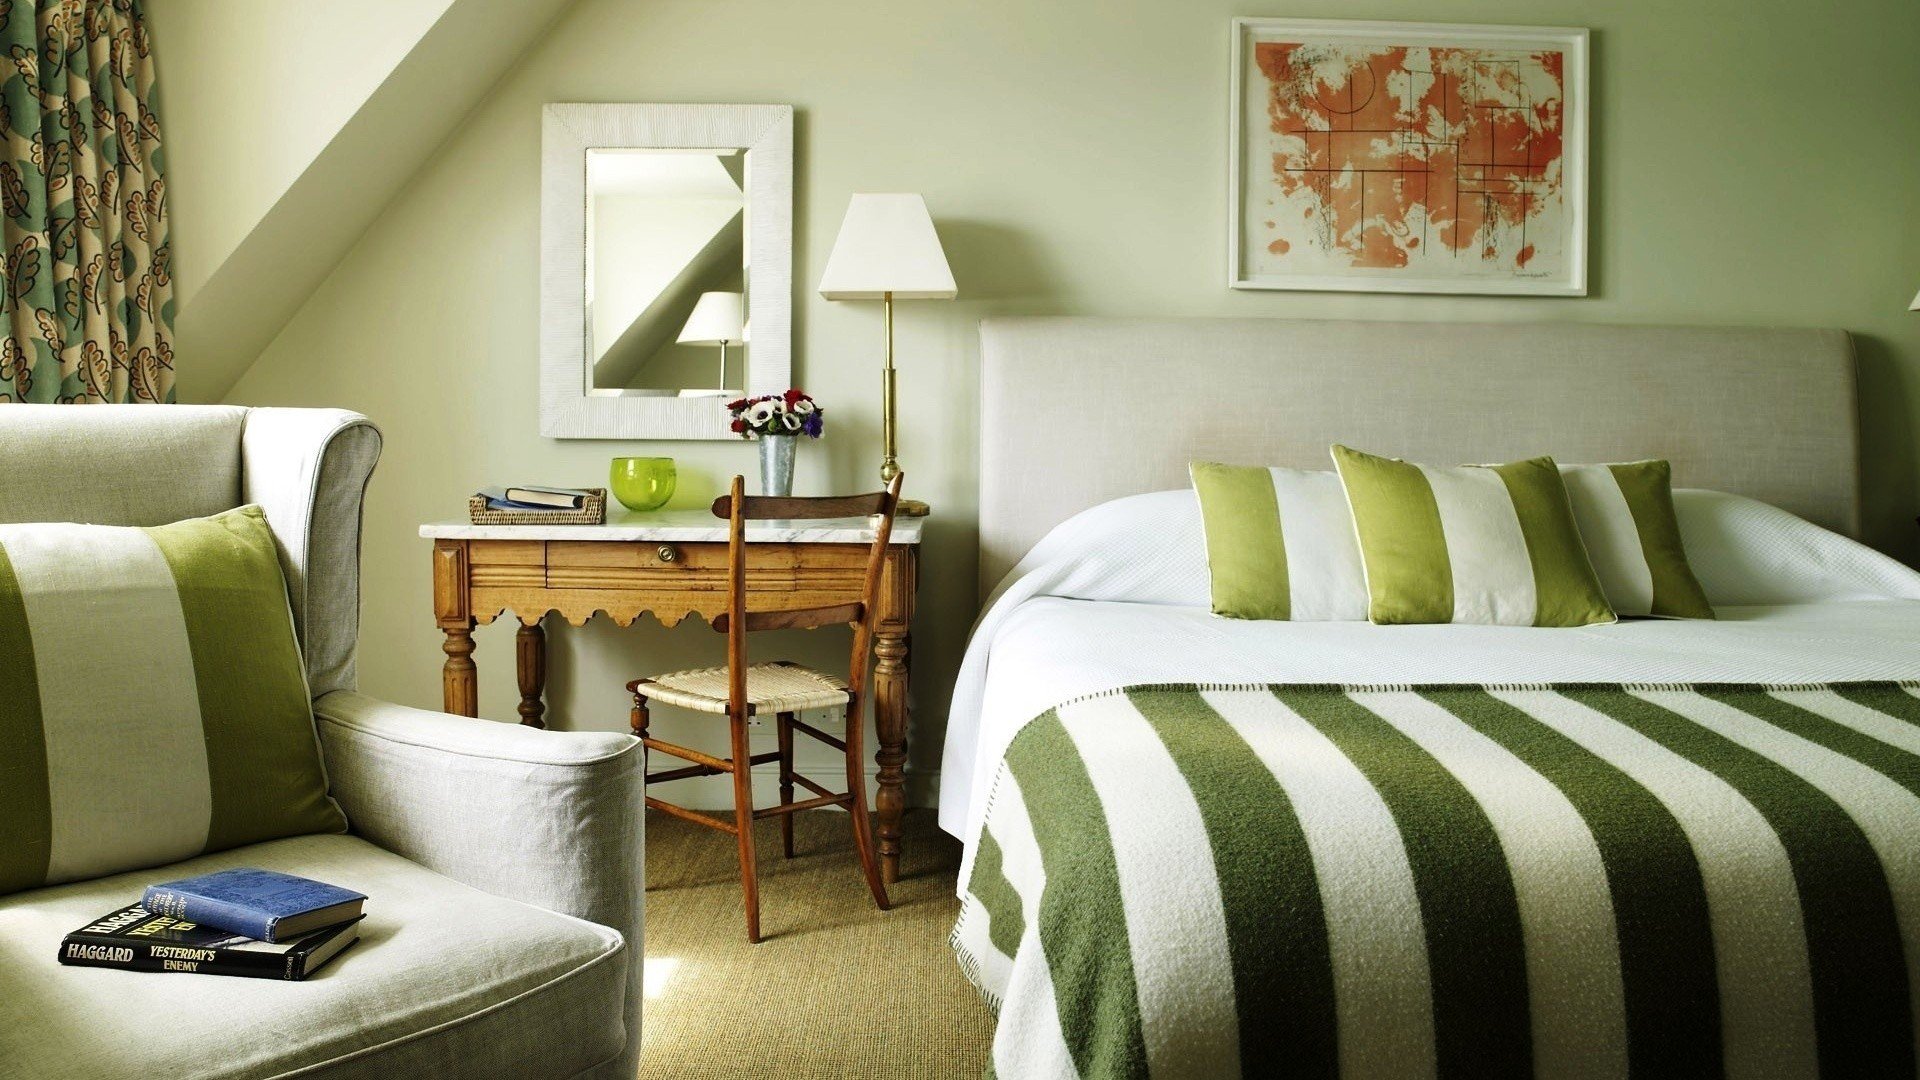 beds, Interior, Bedroom Wallpaper